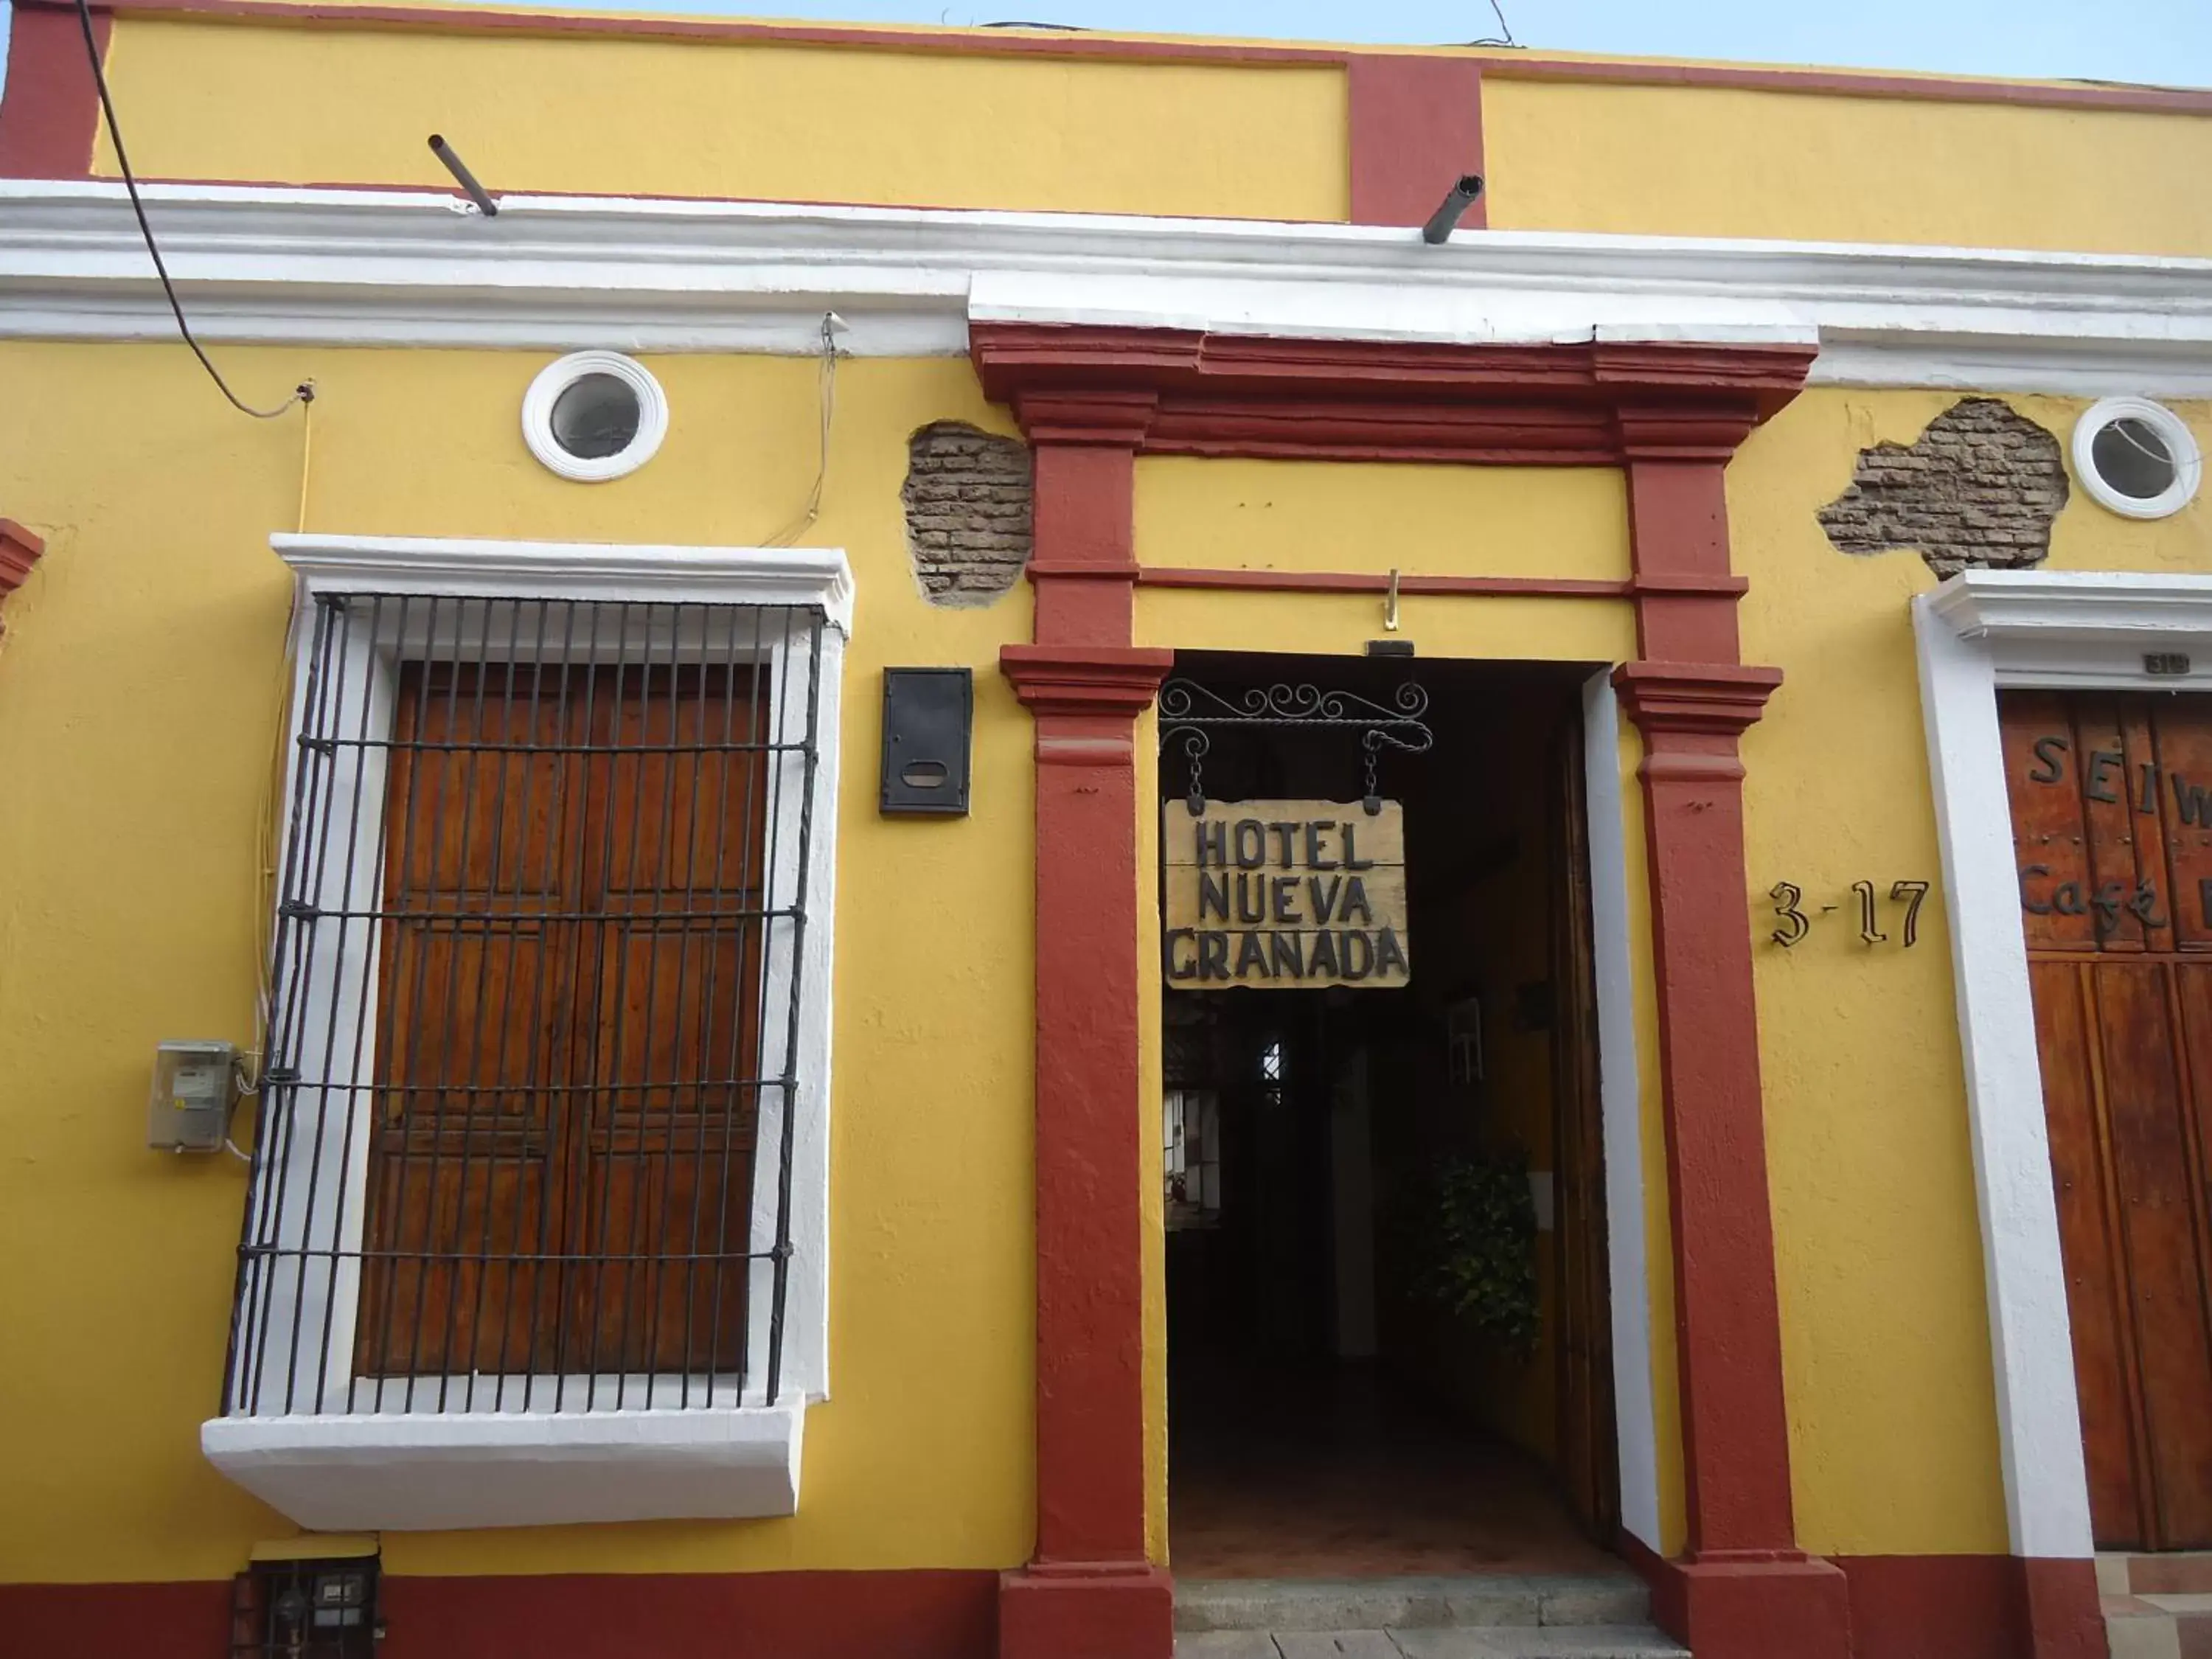 Facade/entrance in Hotel Nueva Granada